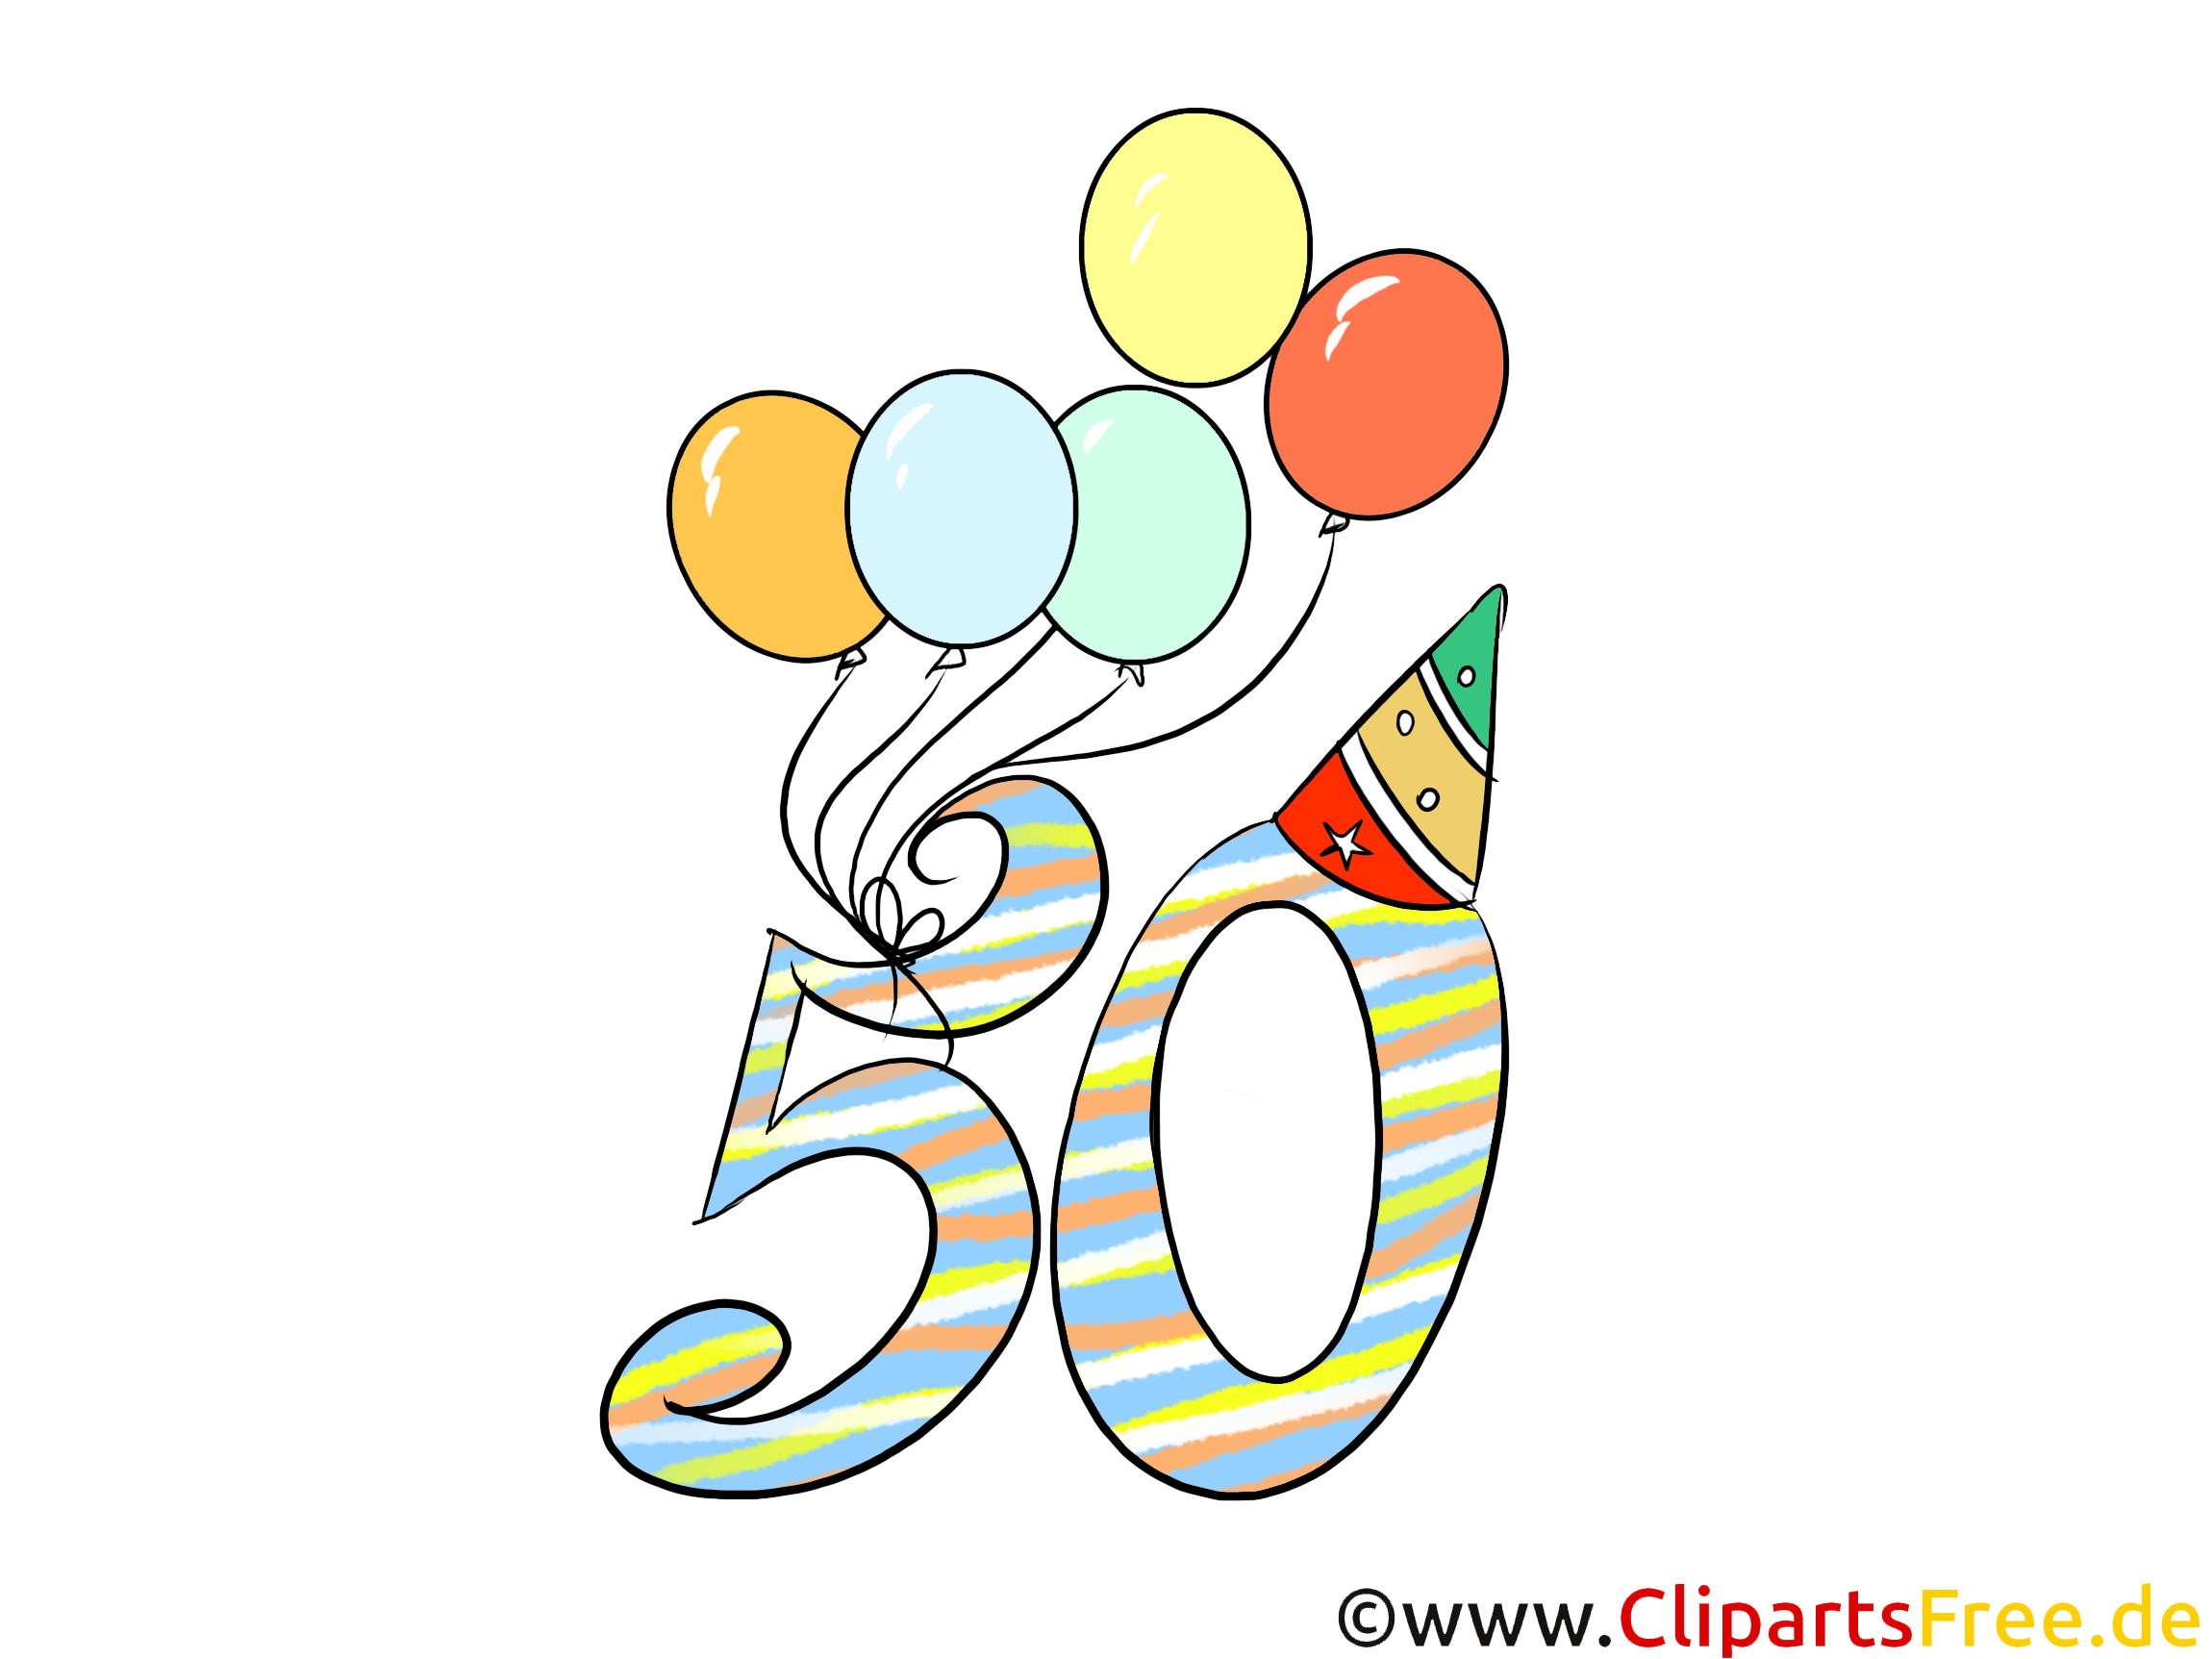 Aniversário de 50 anos de Clipart